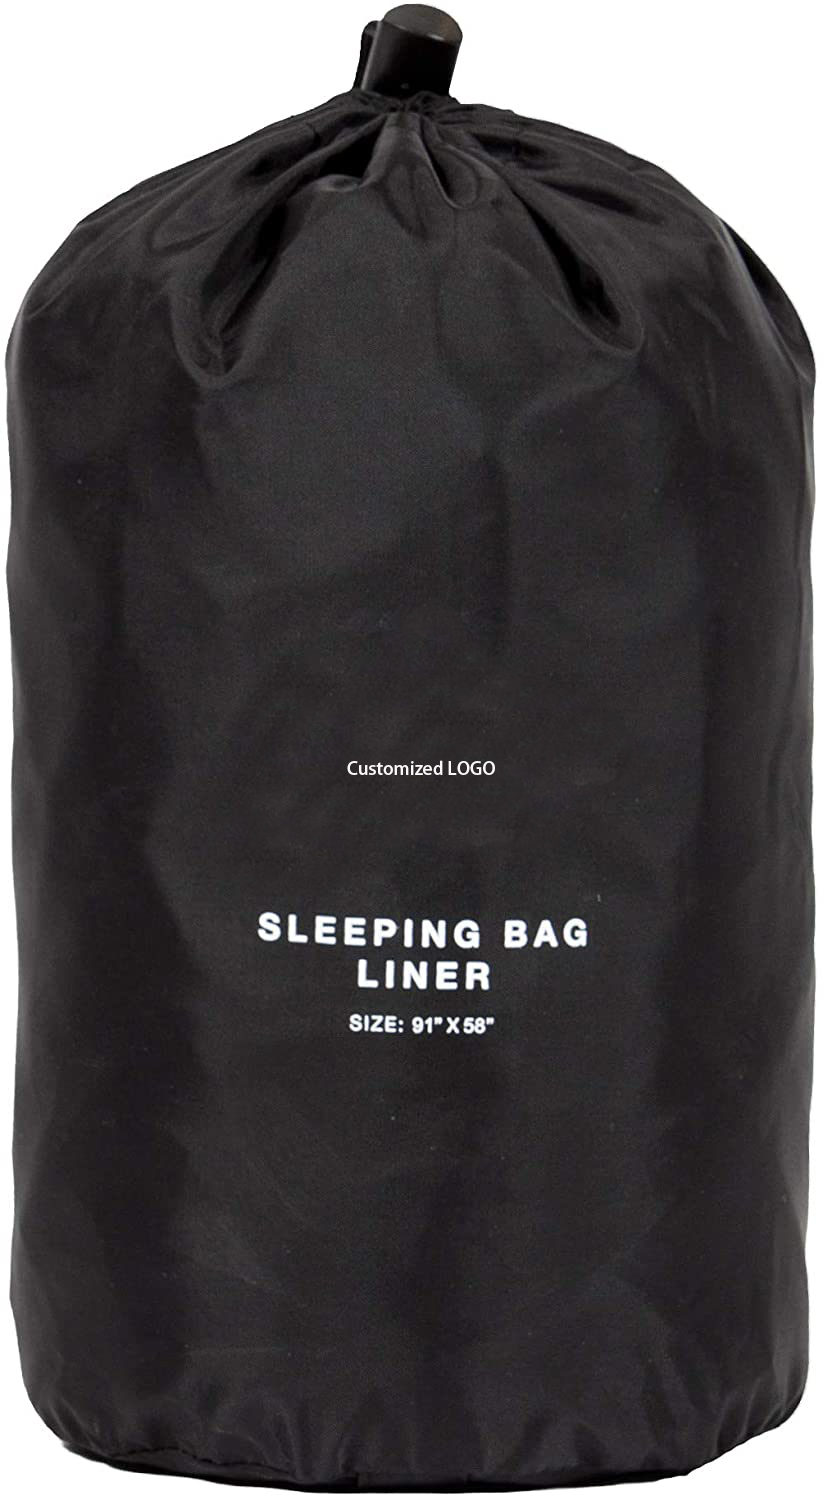 NT-sleeping bag liner312-4.jpg